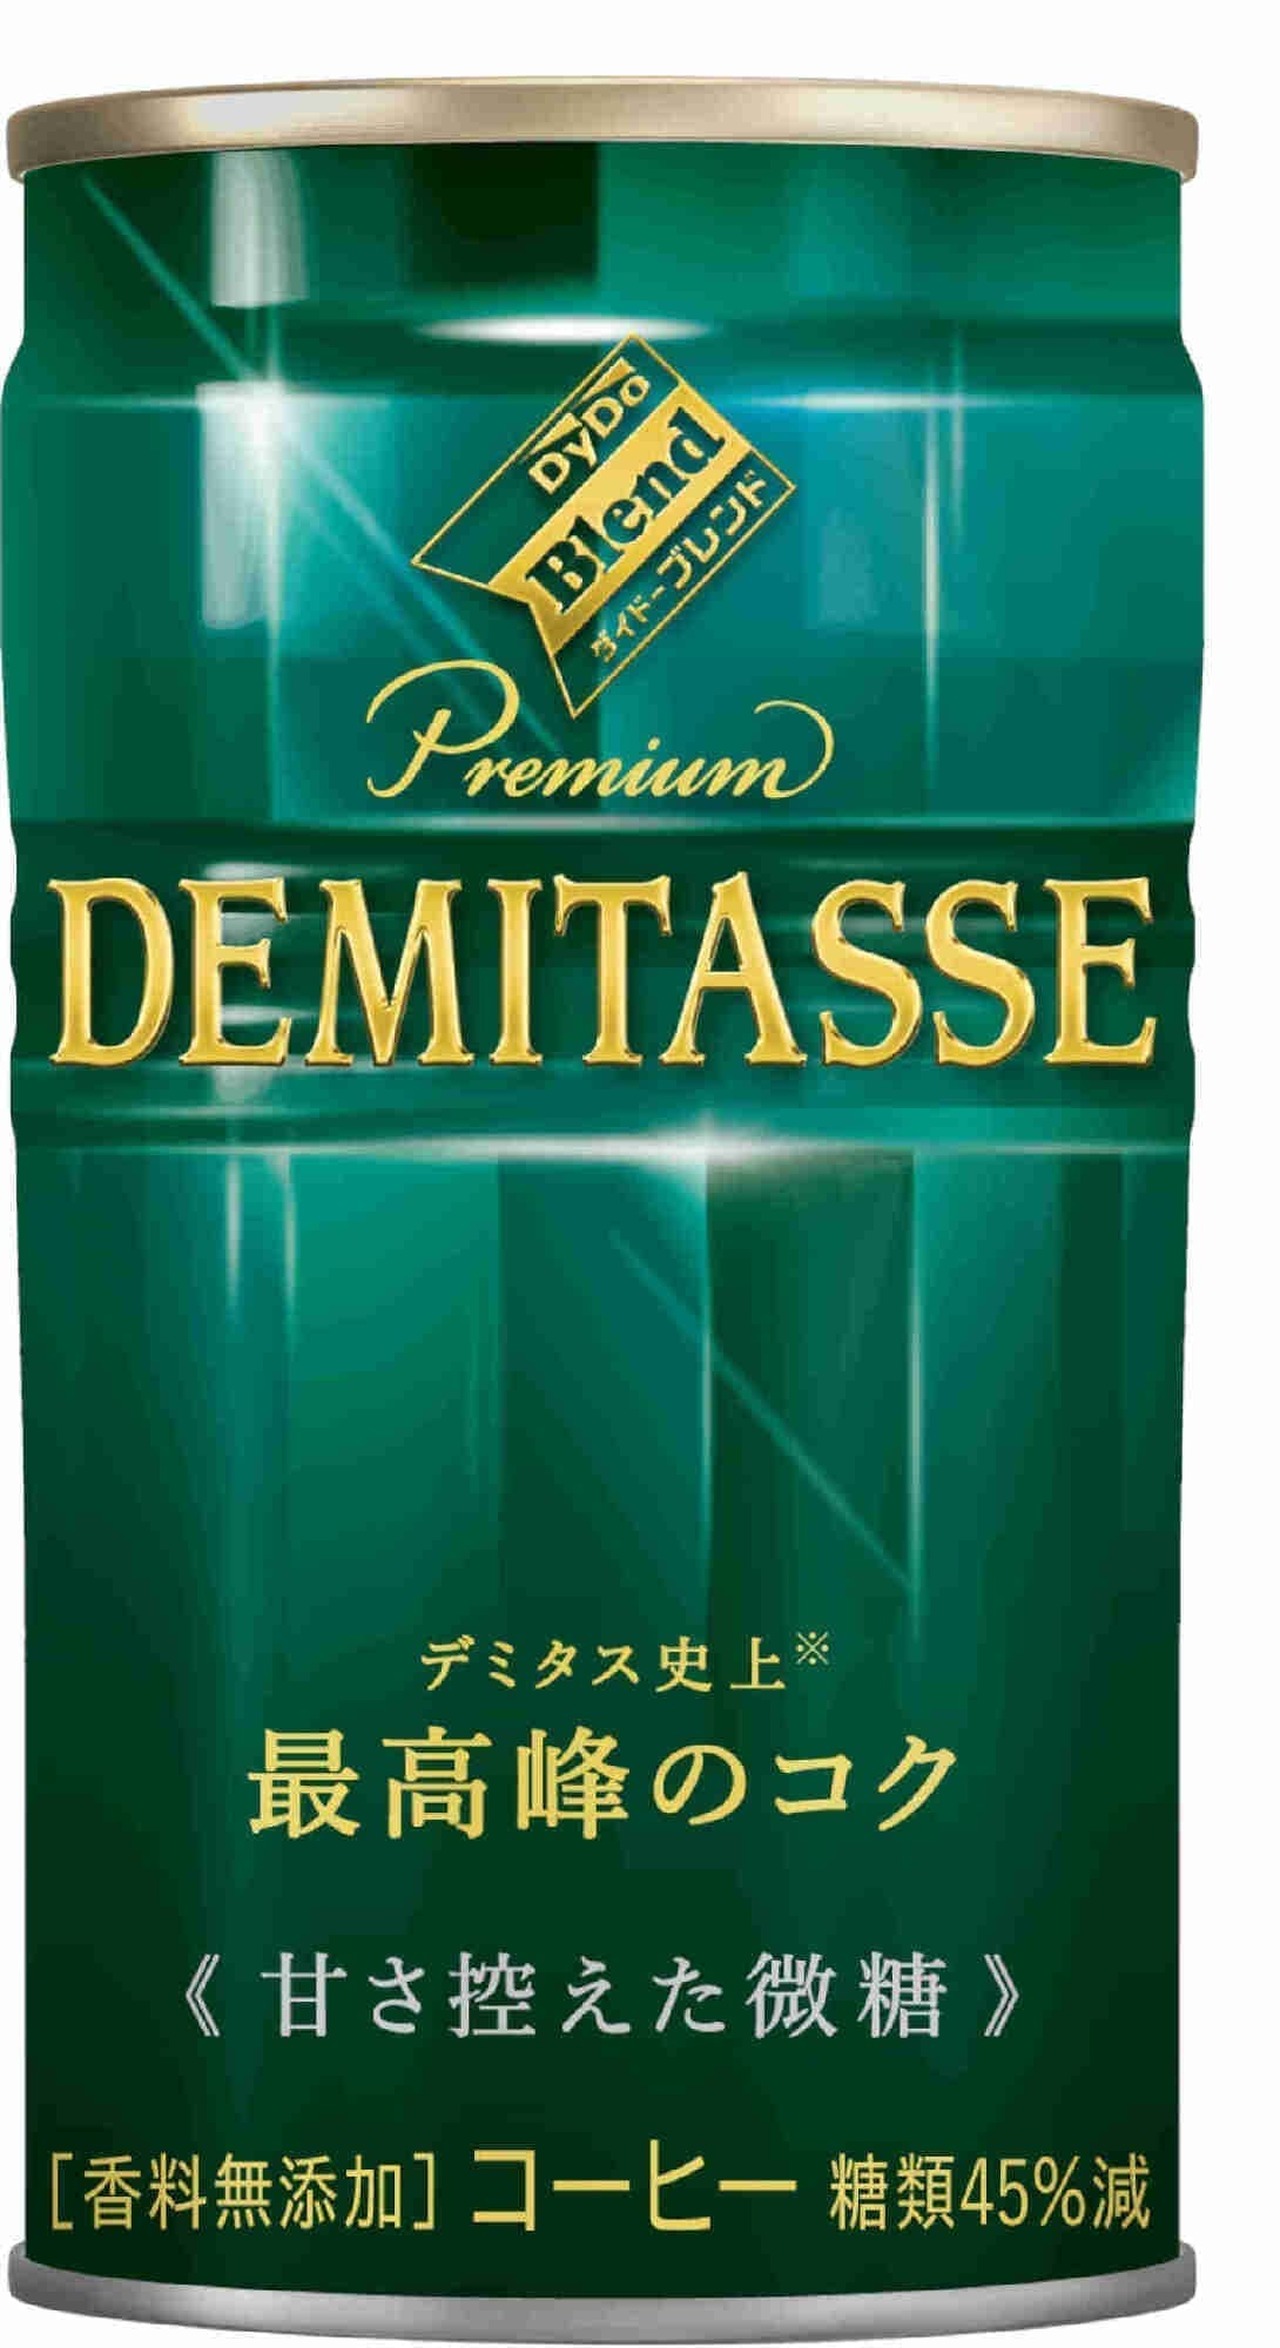 「ダイドーブレンドプレミアム デミタス」豆量1.5倍のプレミアム缶コーヒー5種